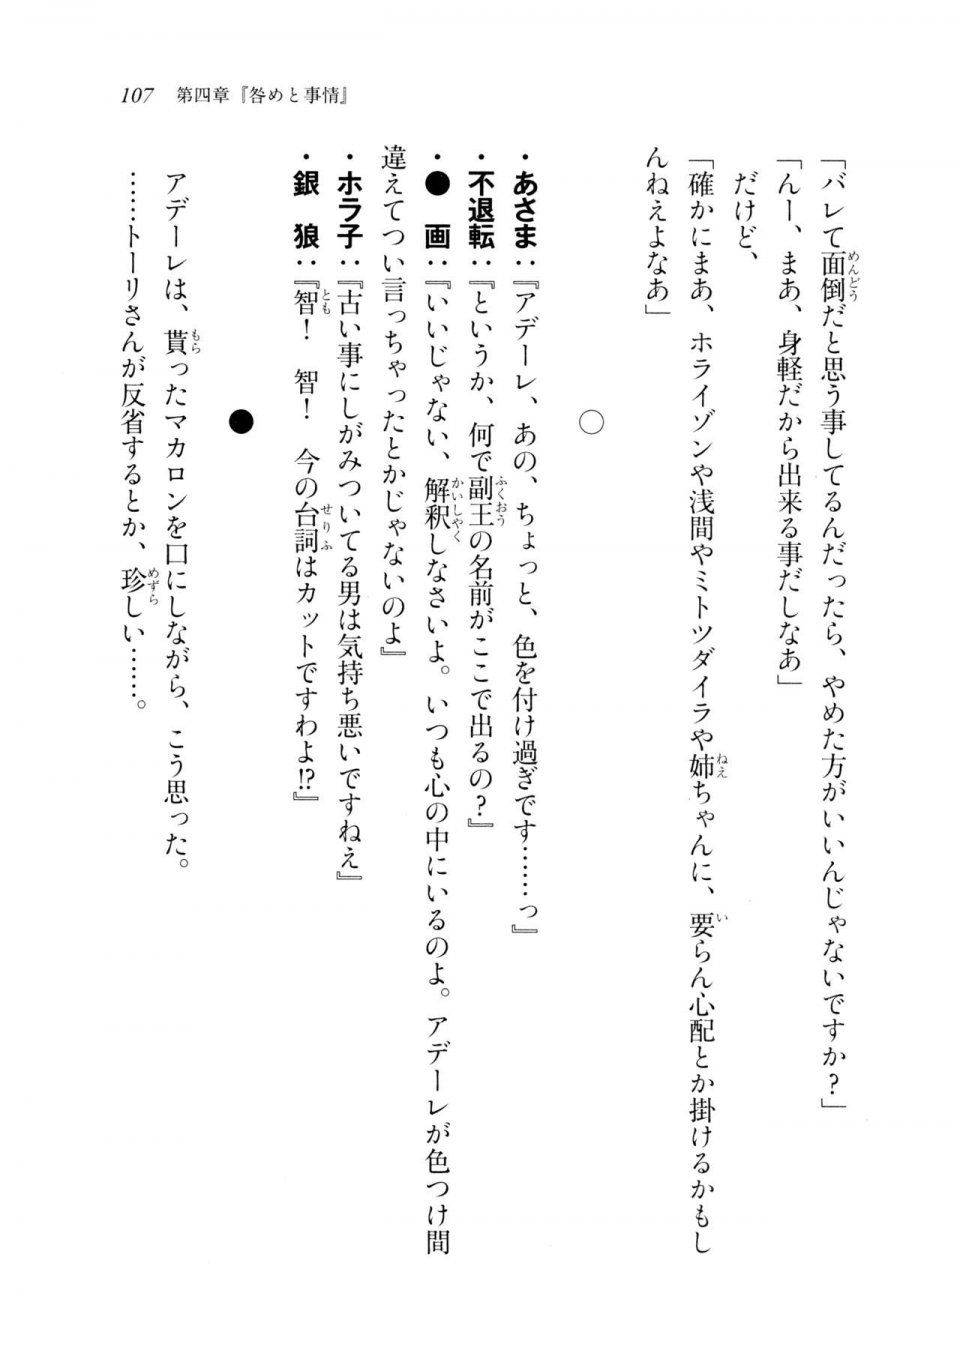 Kyoukai Senjou no Horizon LN Sidestory Vol 2 - Photo #105